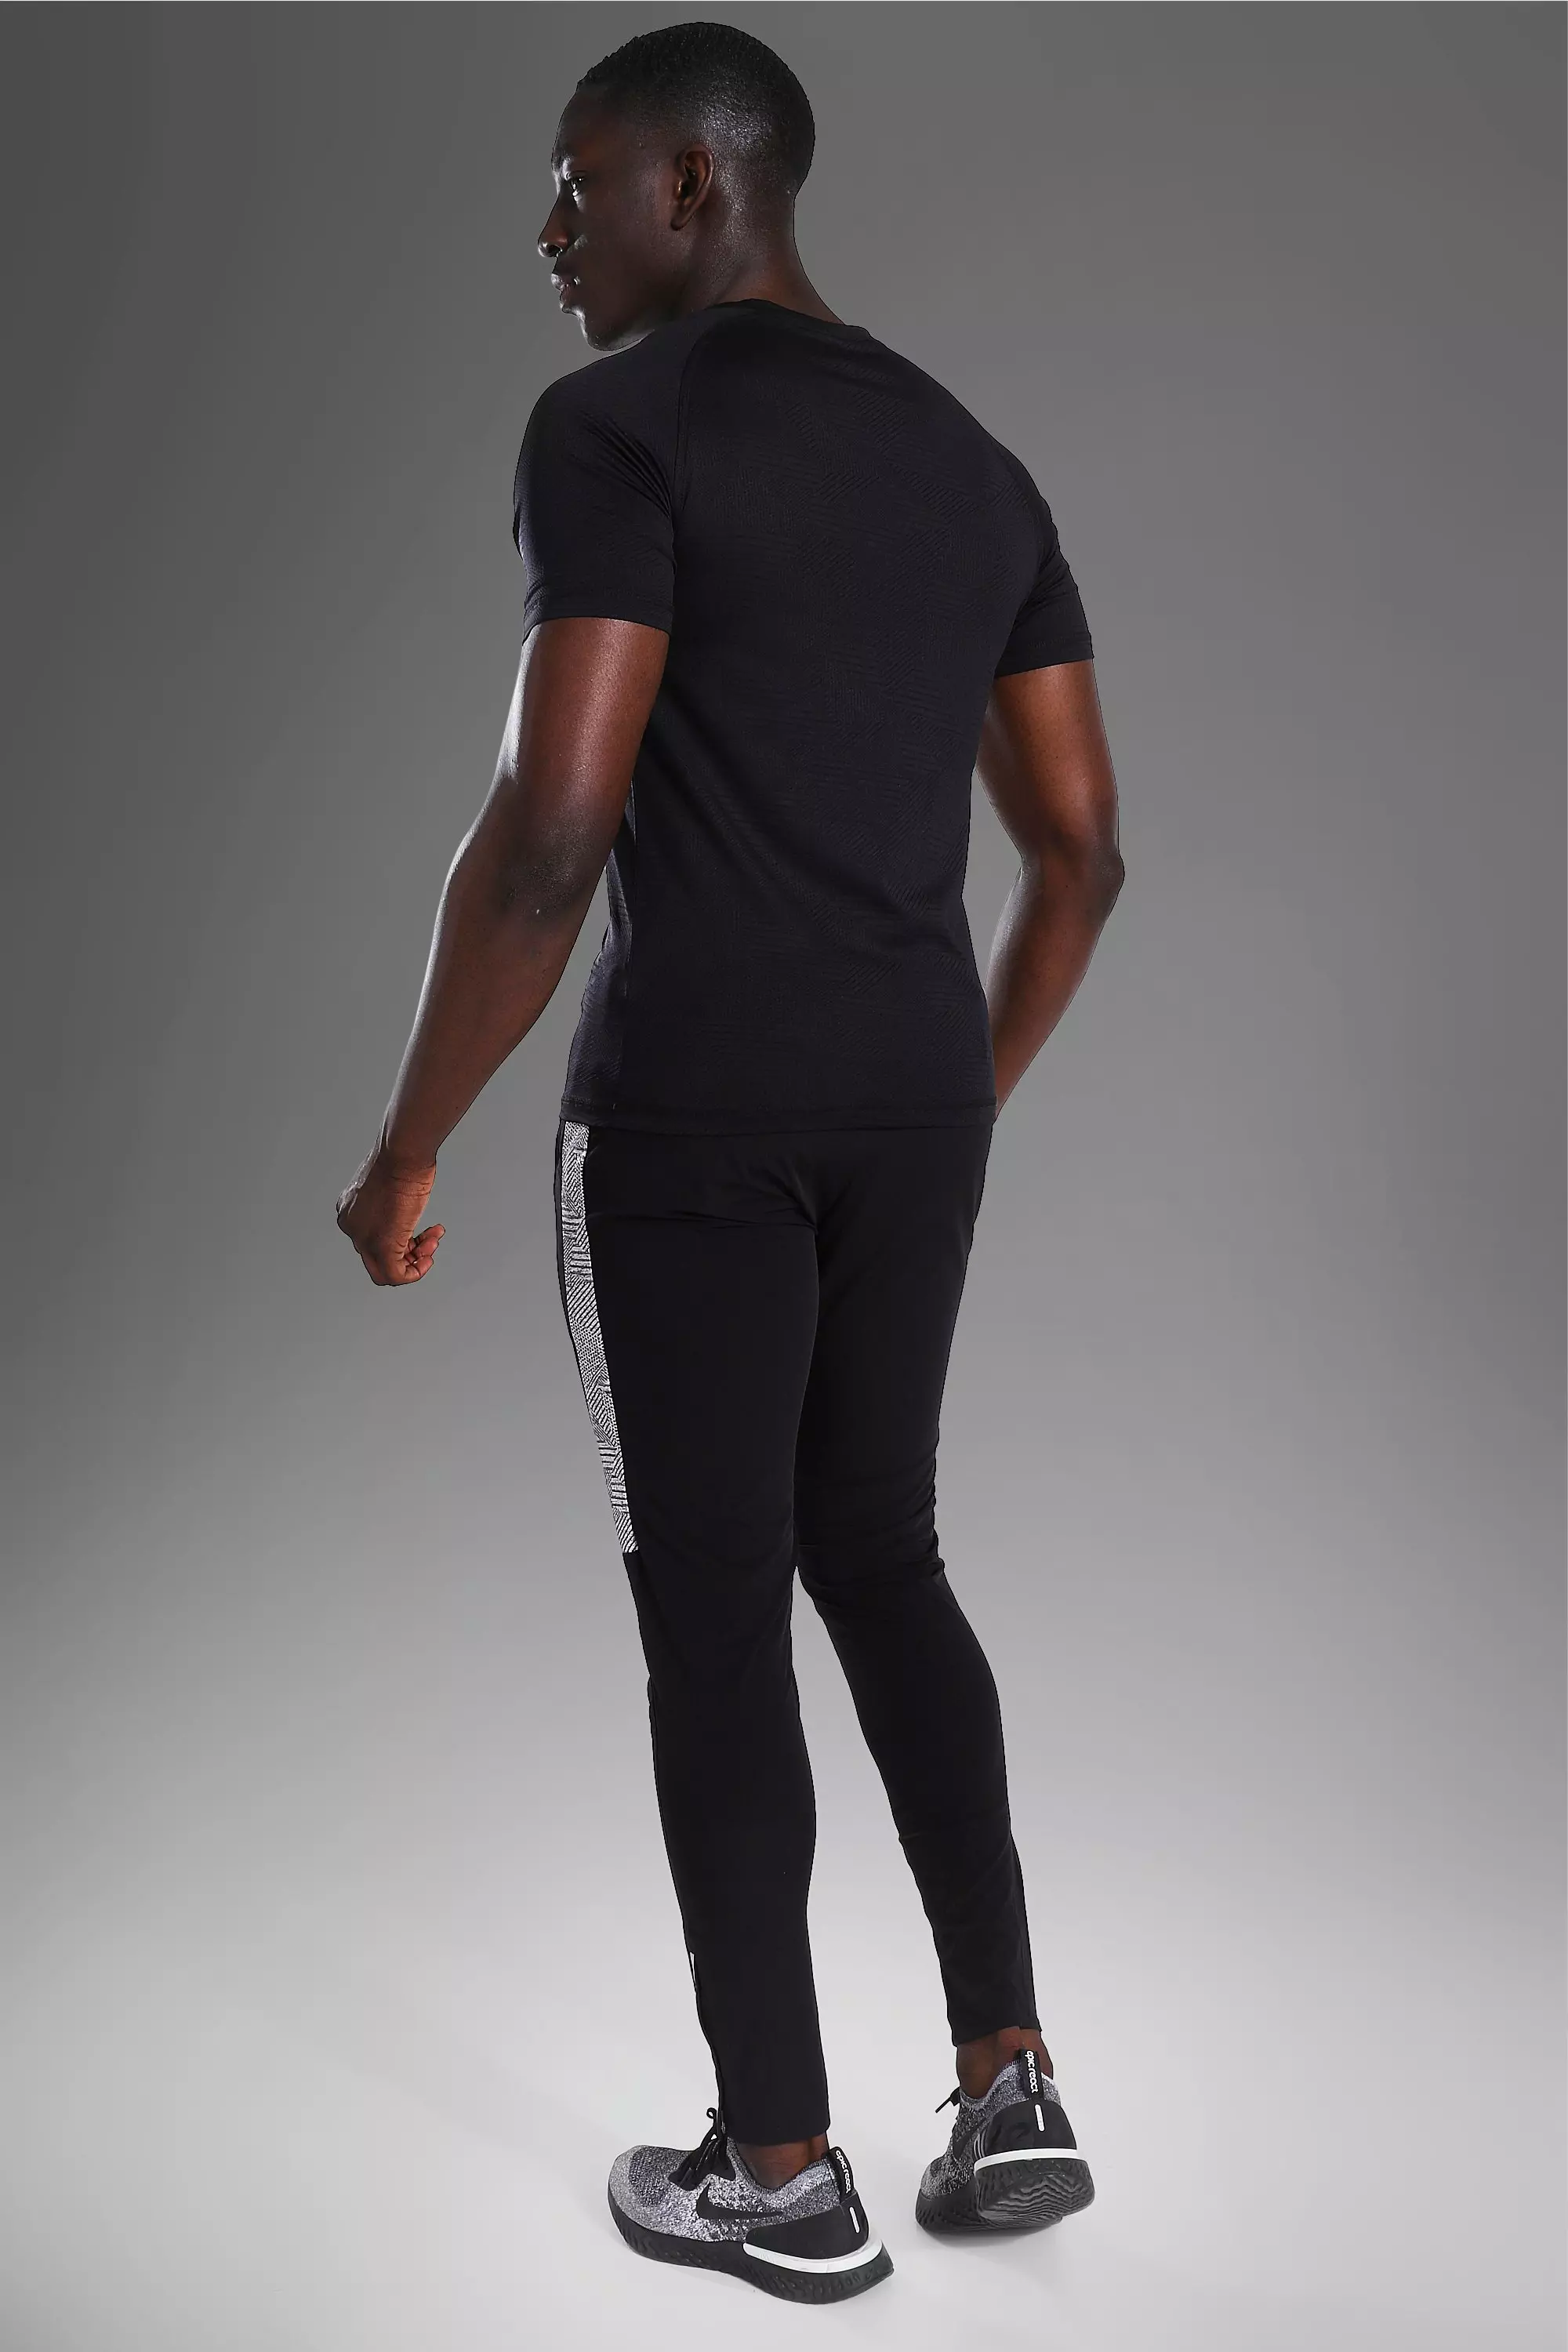 B91xZ Workout Shirts For Men Men's Muscle Turn Down Collar Shirts